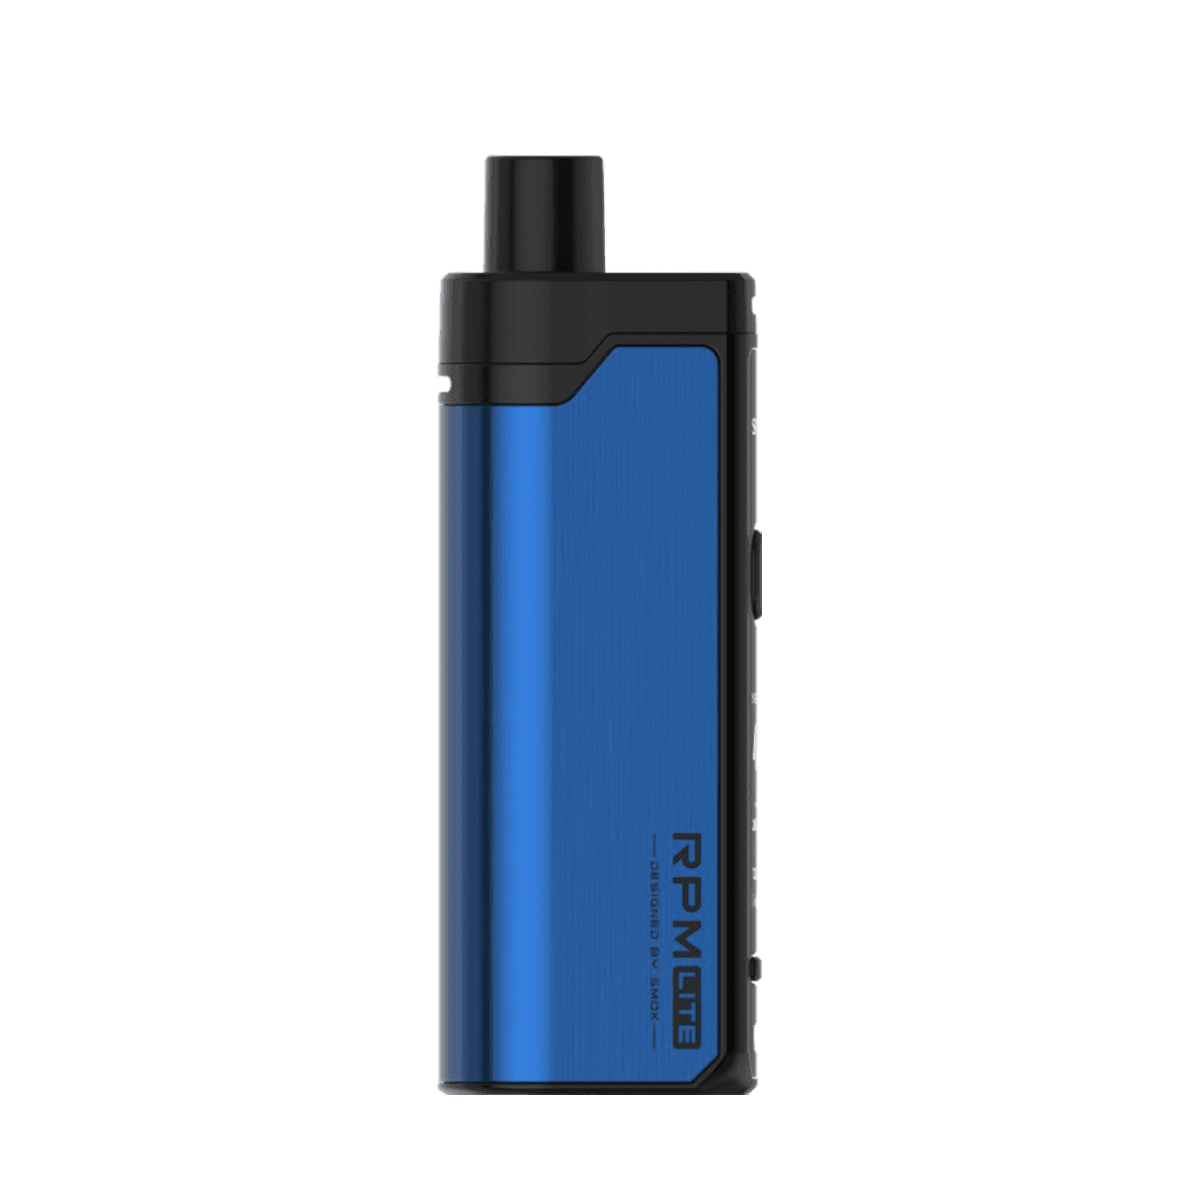 Smok RPM Lite Pod-Mod Kit Blue  